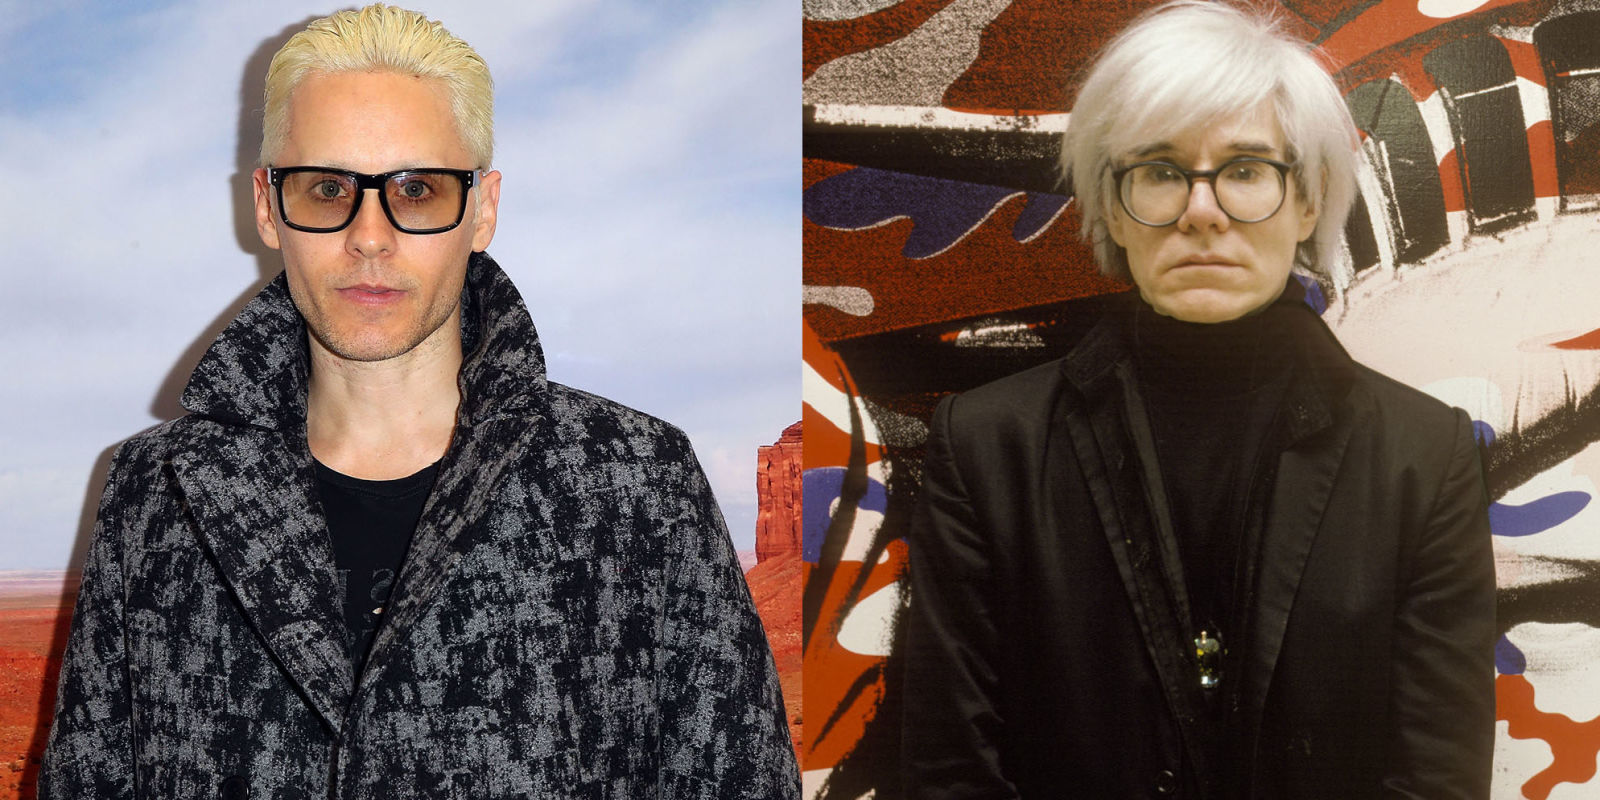 Jared Leto tackling Andy Warhol next 2016 images